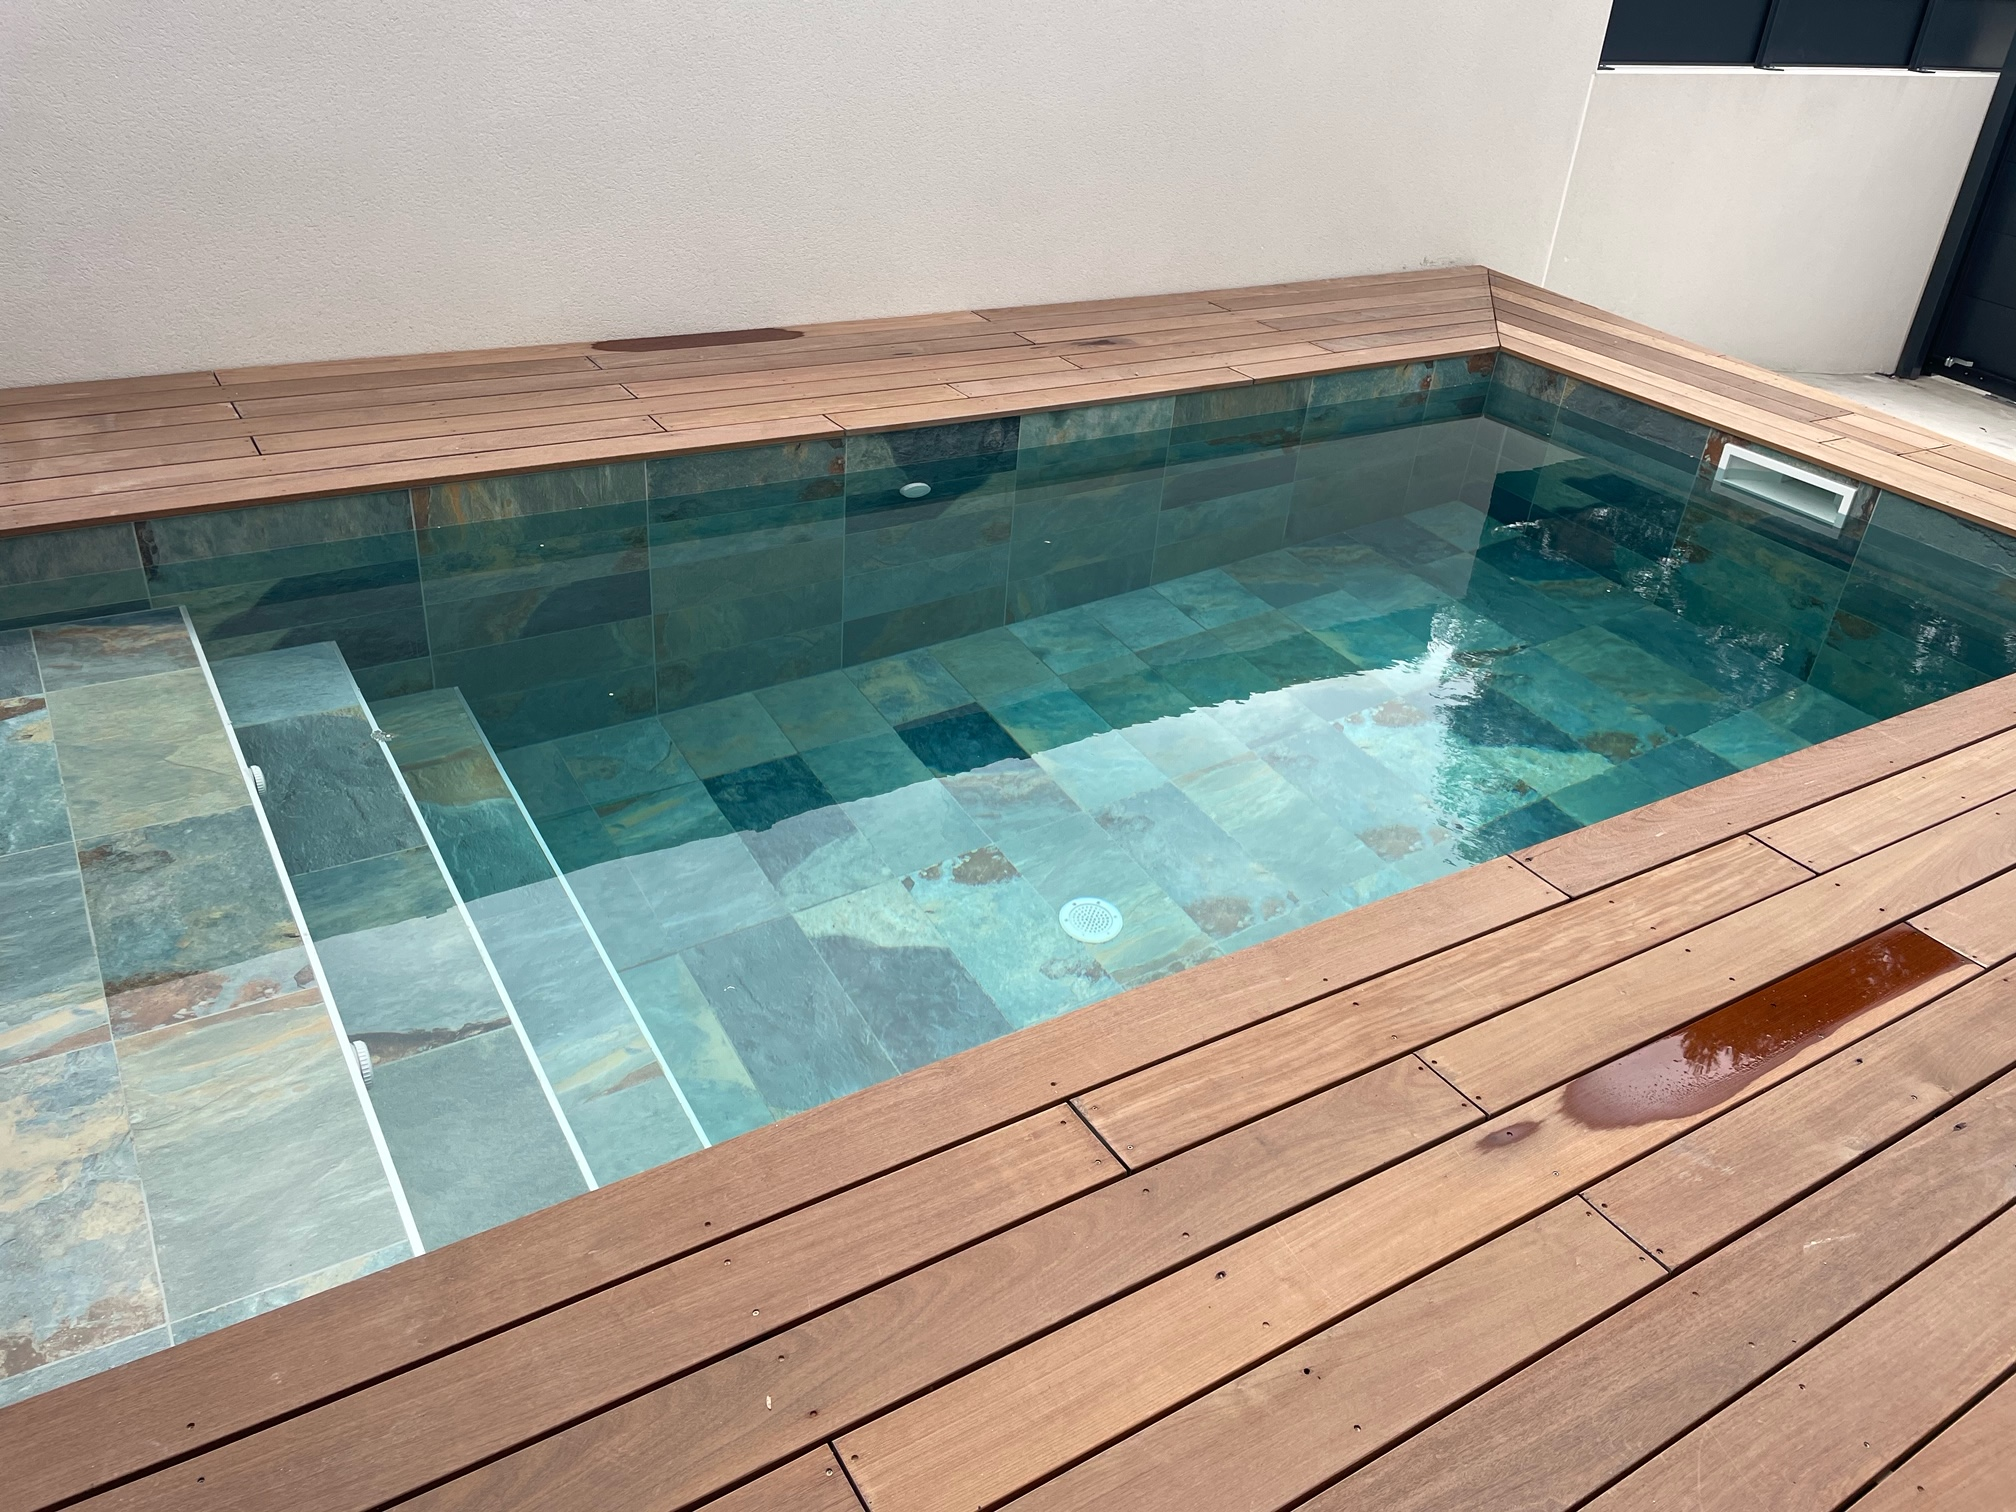 Lot de 27.36 m² - Carrelage piscine effet pierre naturelle OXFORD BALI VERT 30x60 cm R9 - 27.36 m² - 1